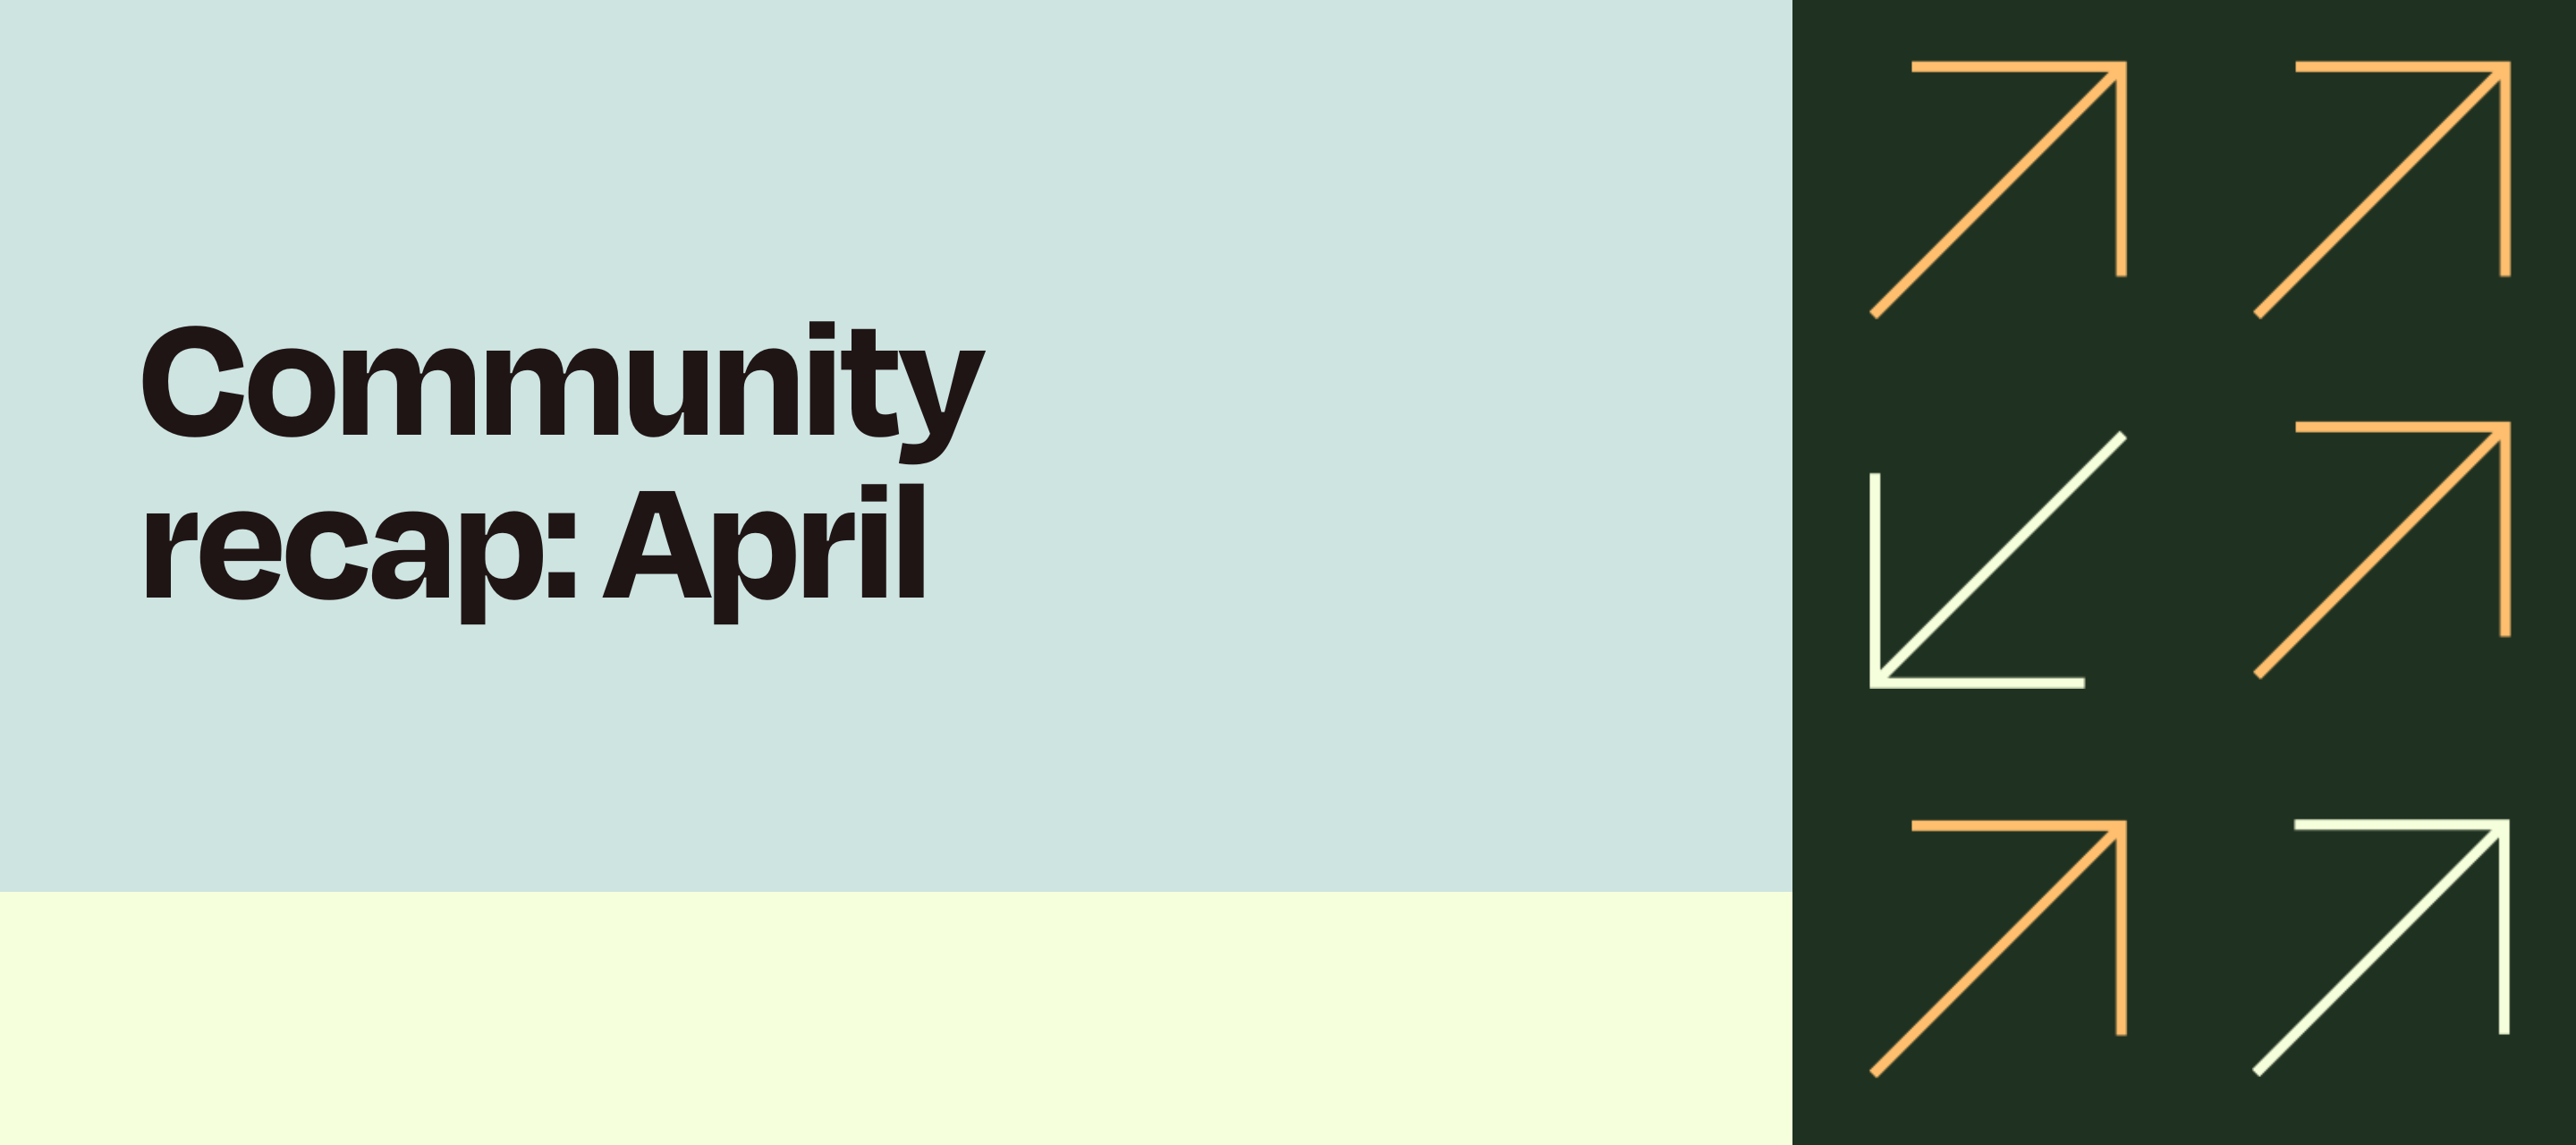 Community recap: April